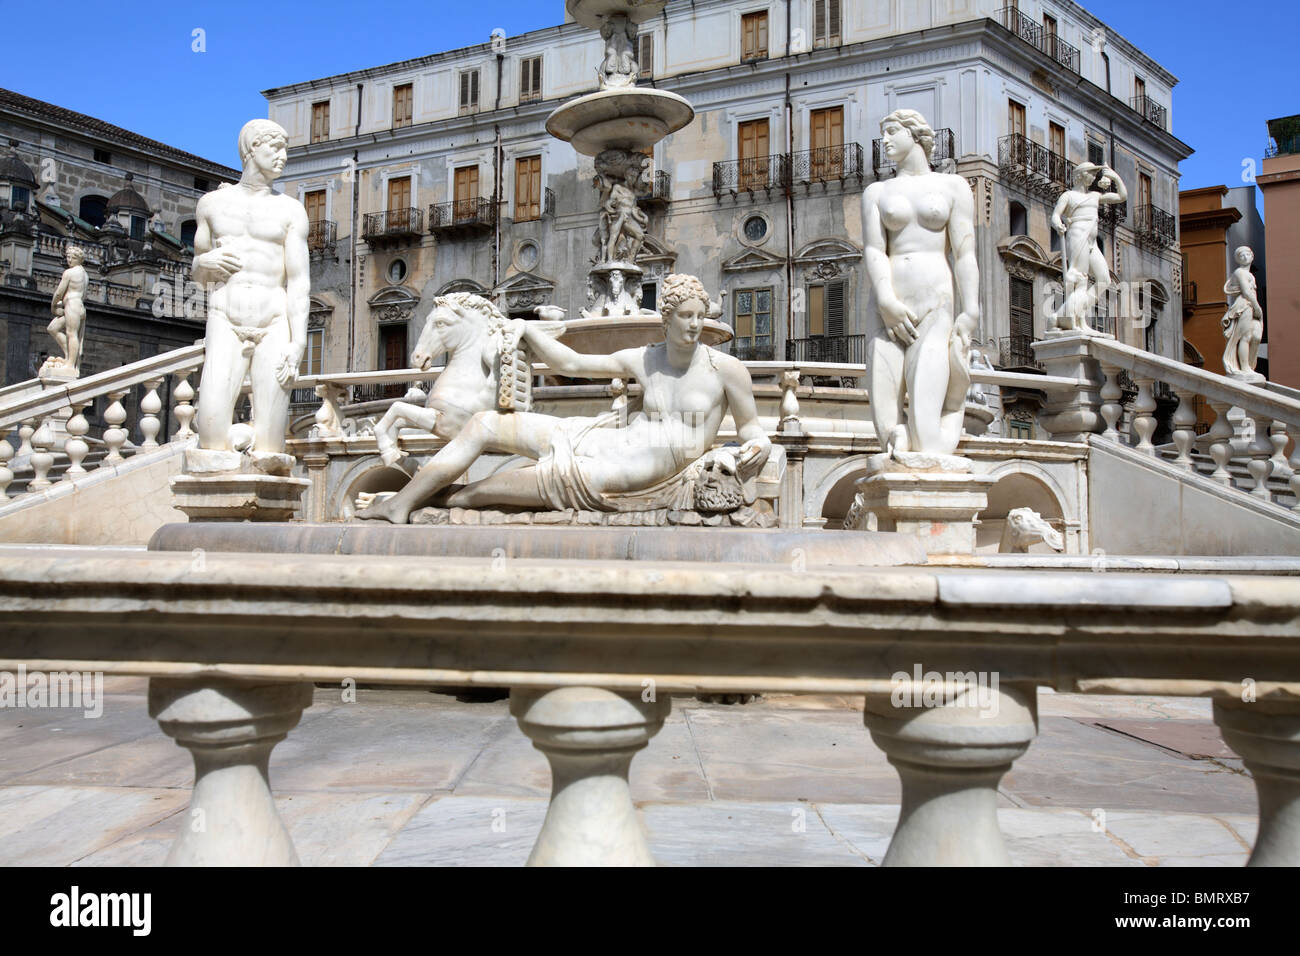 Le baroque Fontana Pretoria dans la Piazza Pretoria, Palerme, Italie Banque D'Images